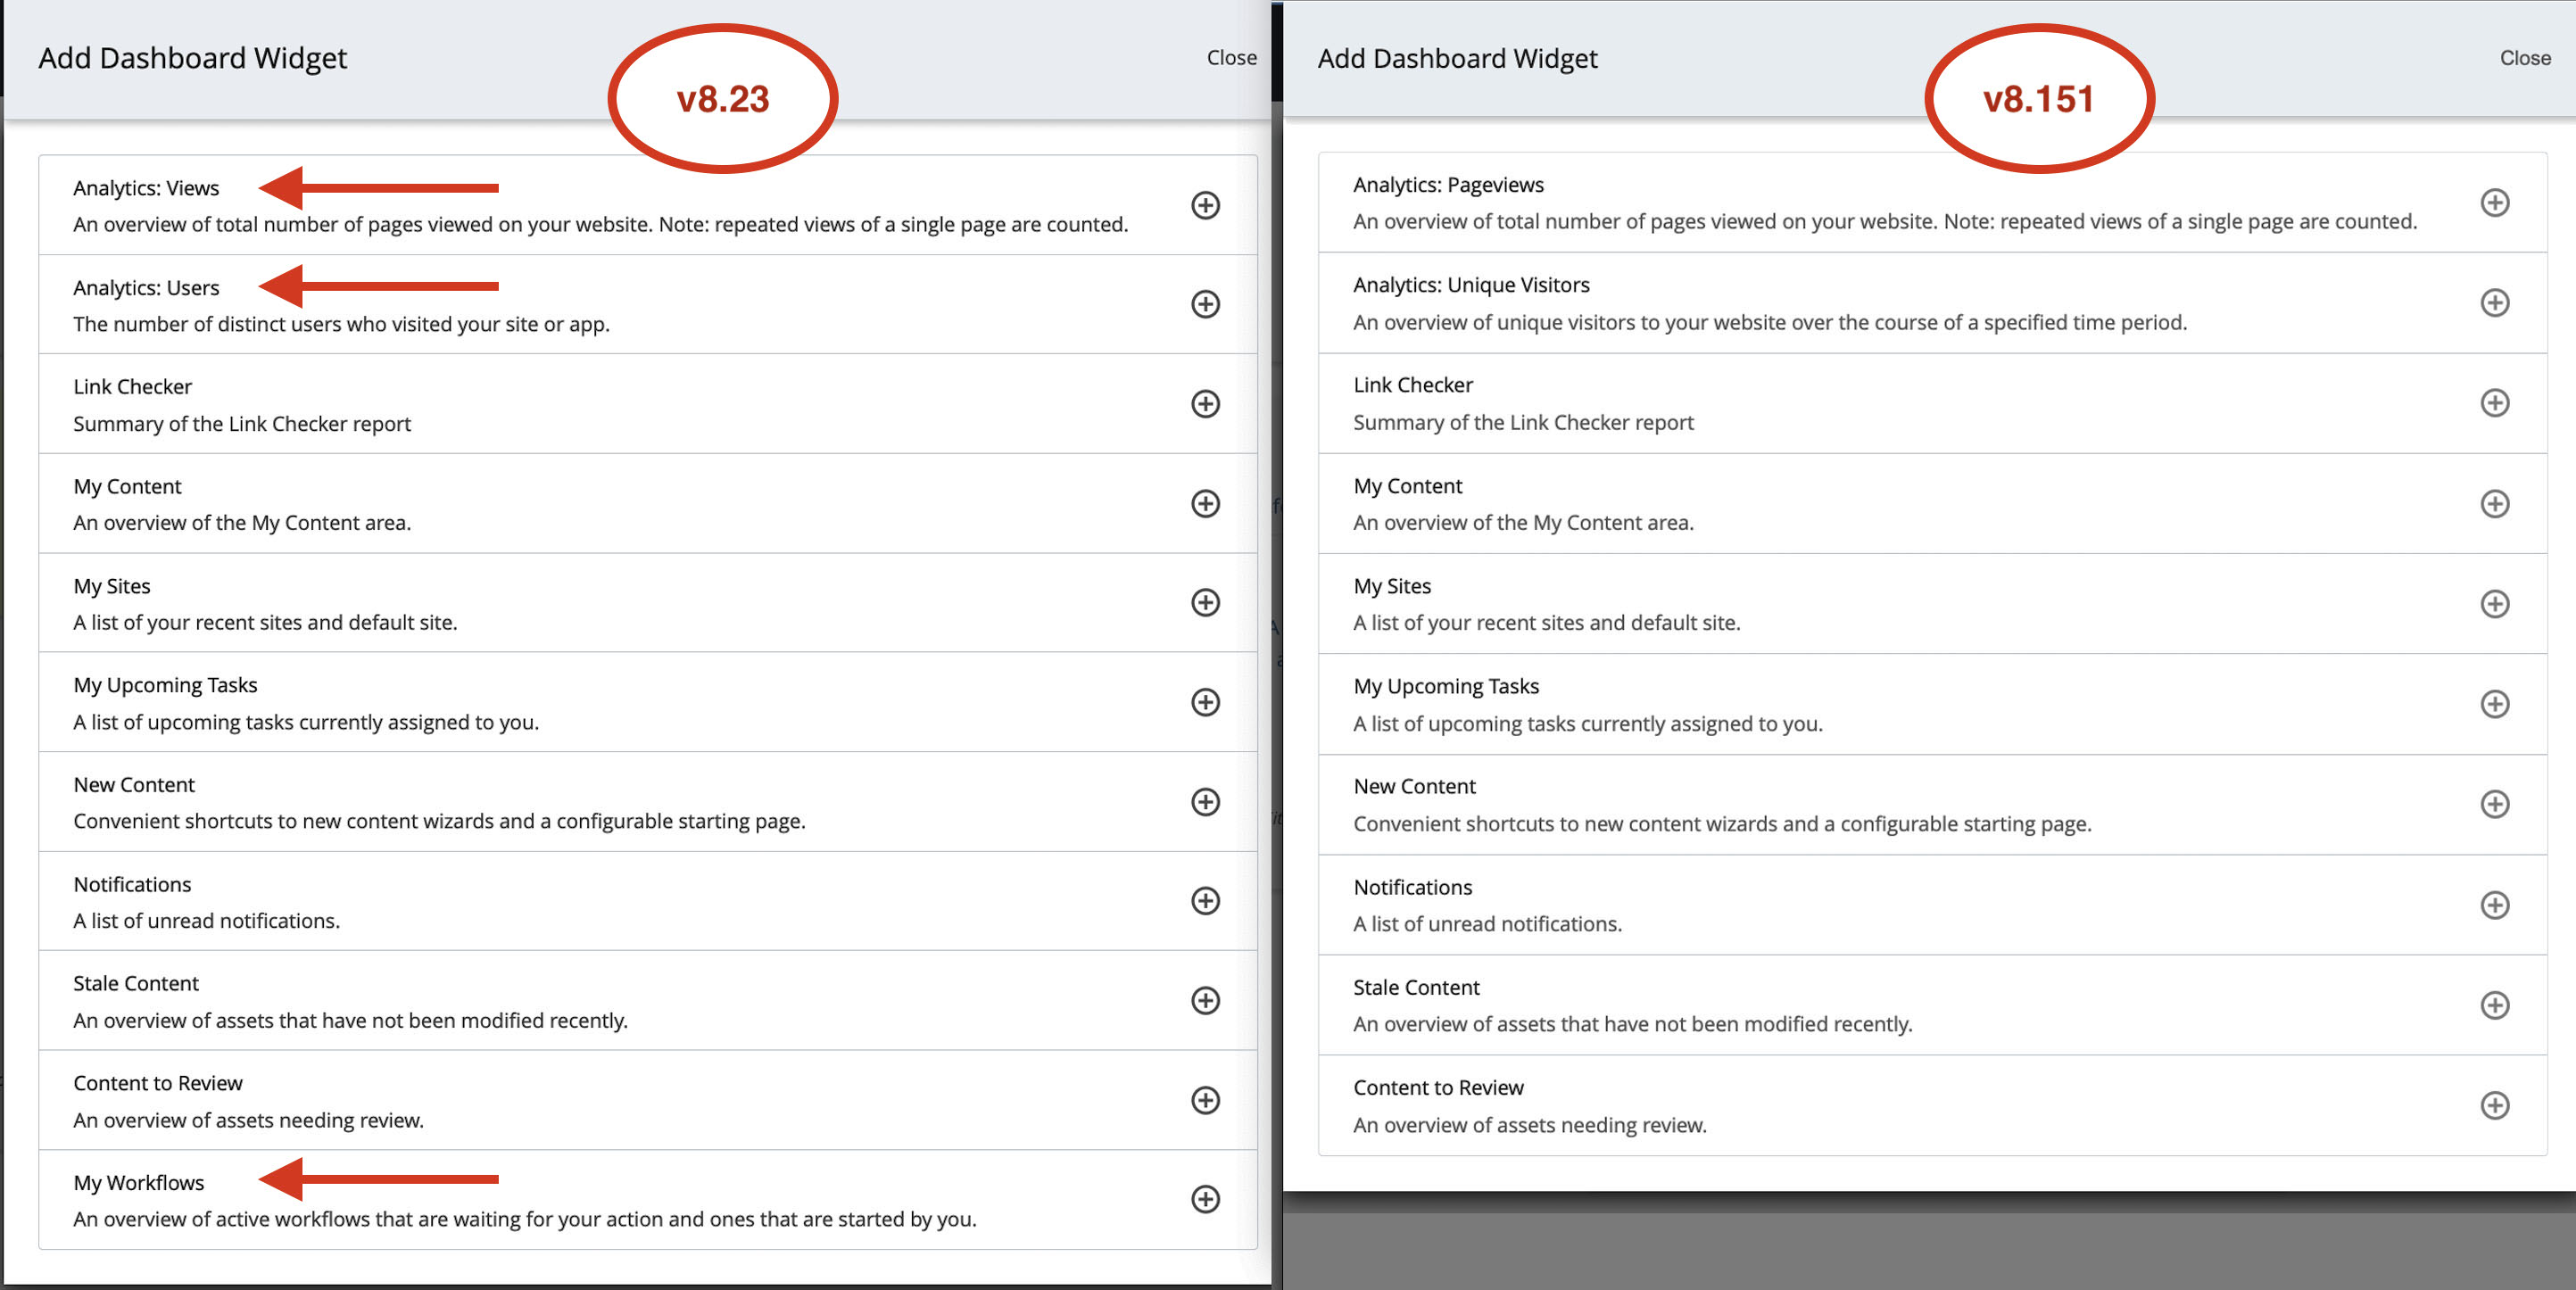 Add Dashboard Widget comparison of version 8.23 with version 8.151